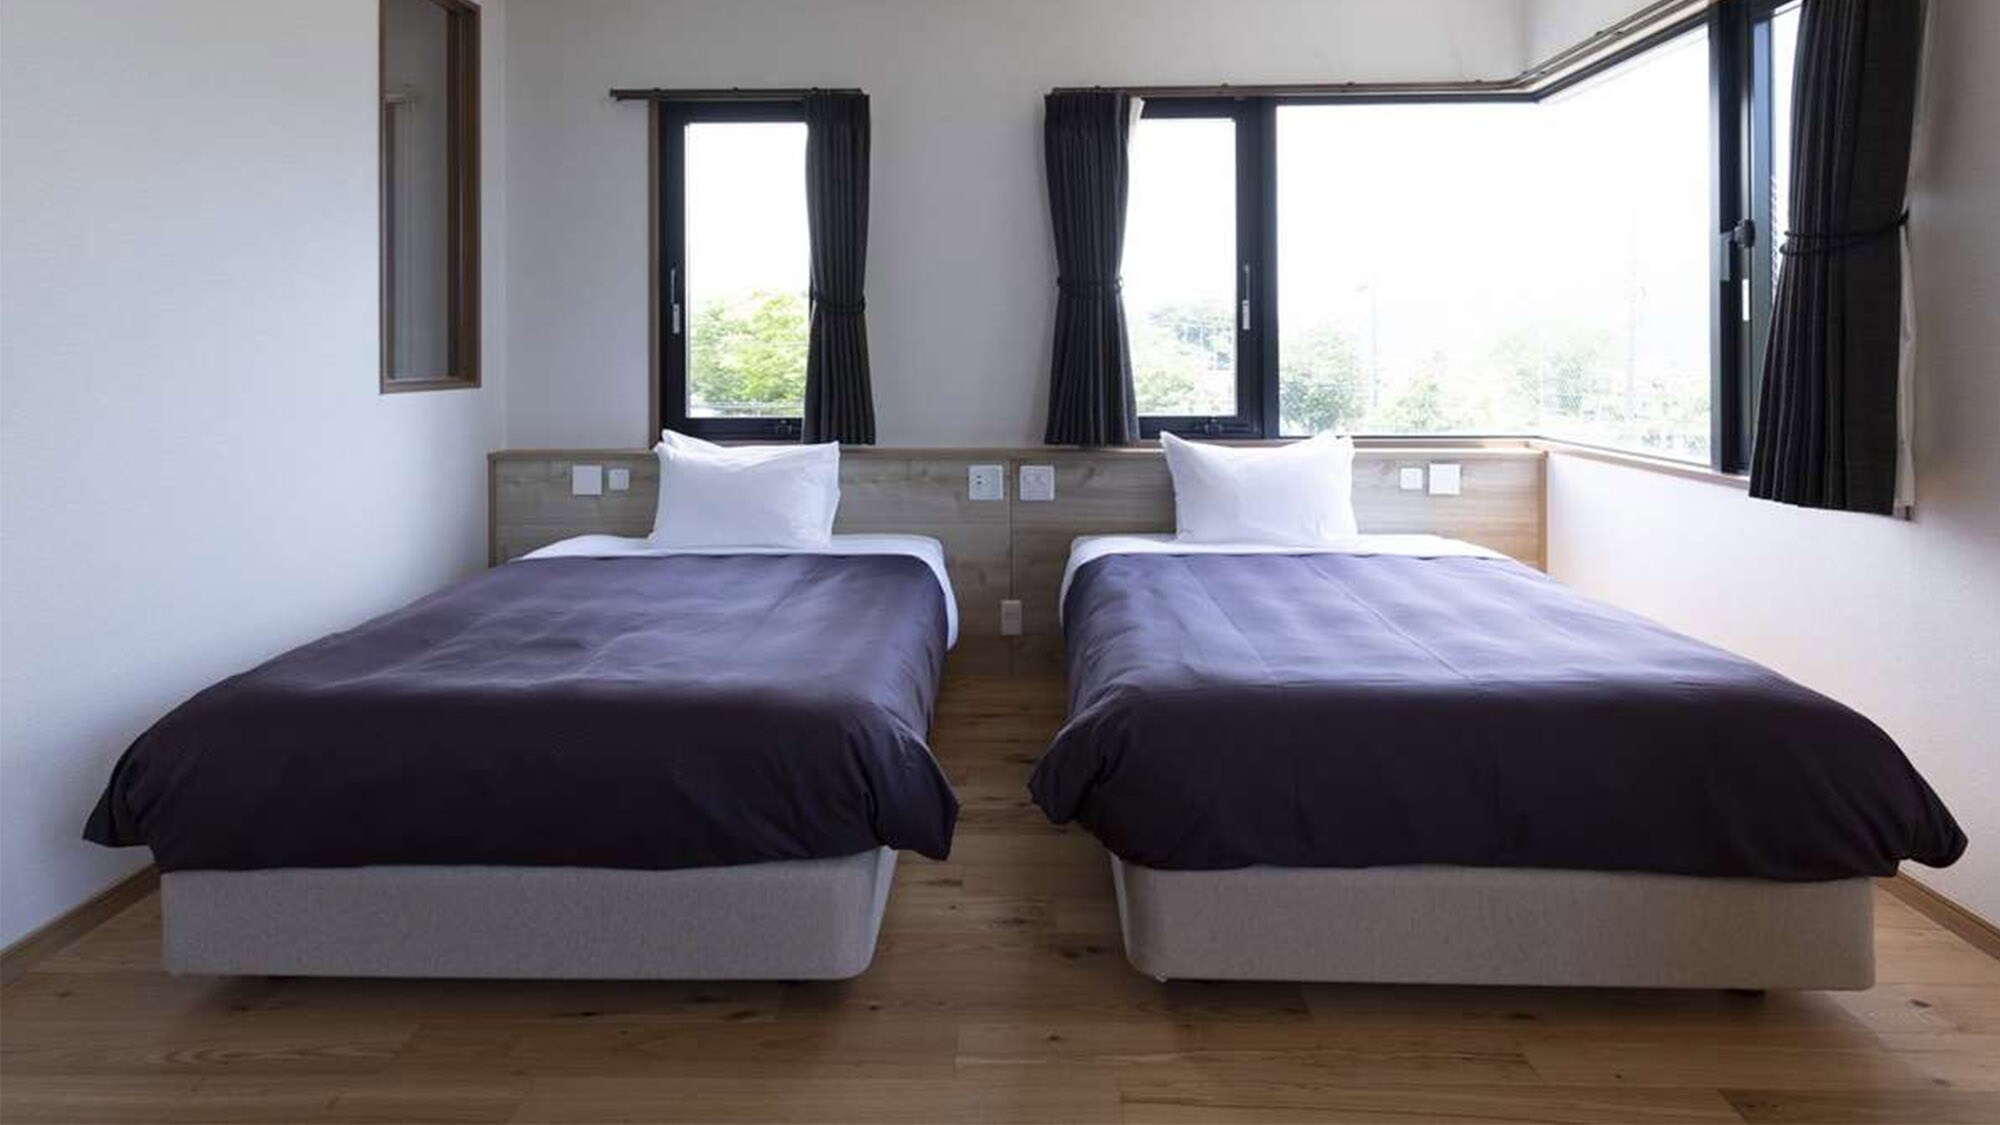 ห้องเตียงแฝดมีเตียงกึ่งเตียงใหญ่ 2 เตียง พื้นที่พักผ่อนกับคนที่คุณรัก